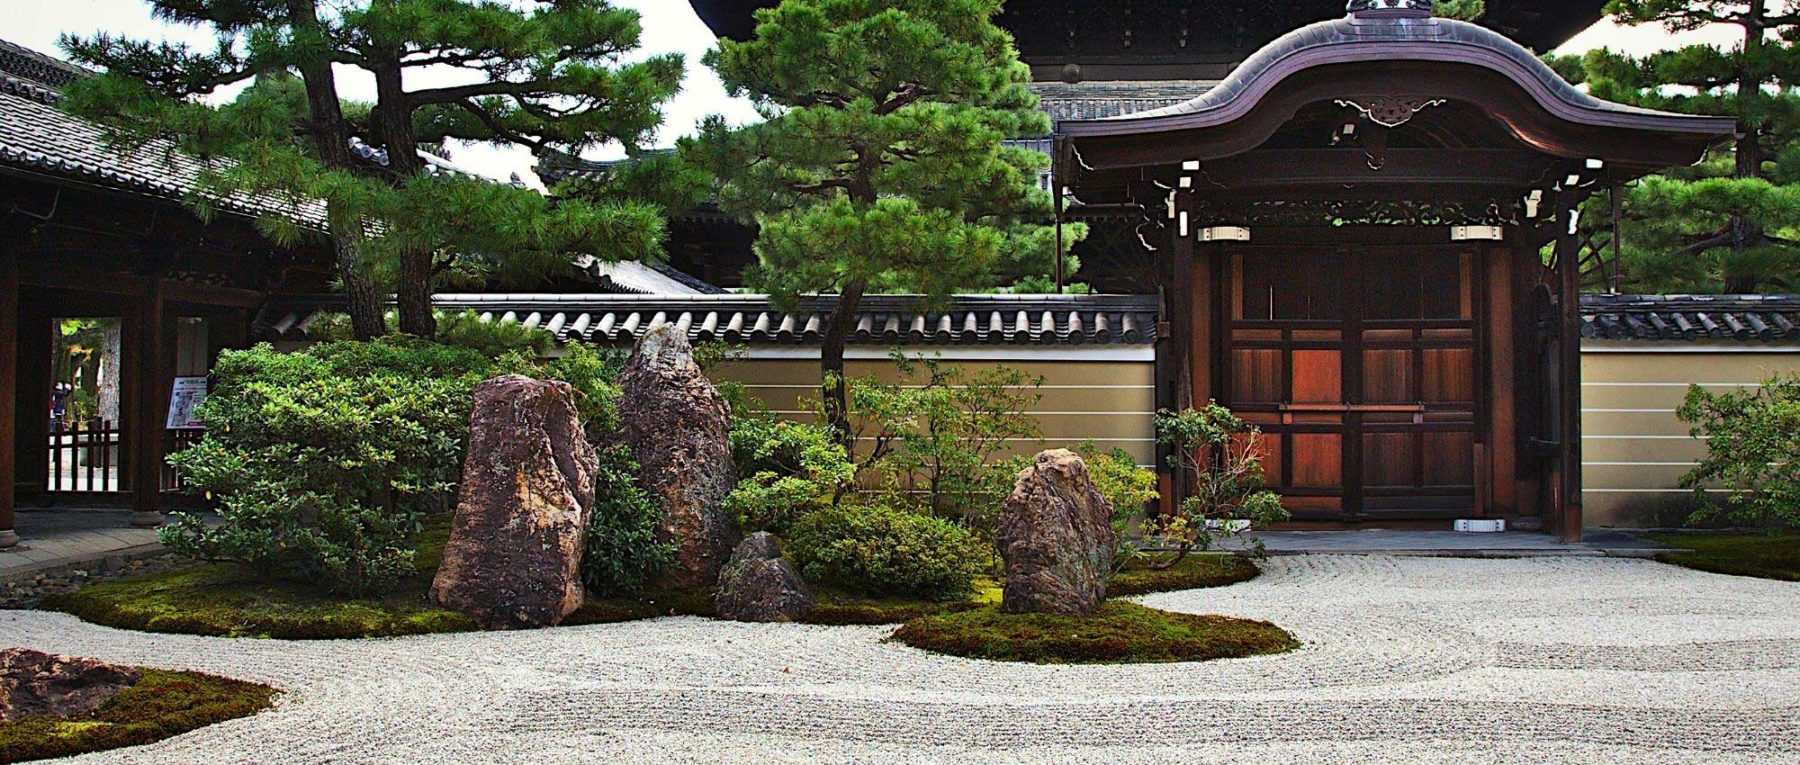 15 idées pour un jardin zen 